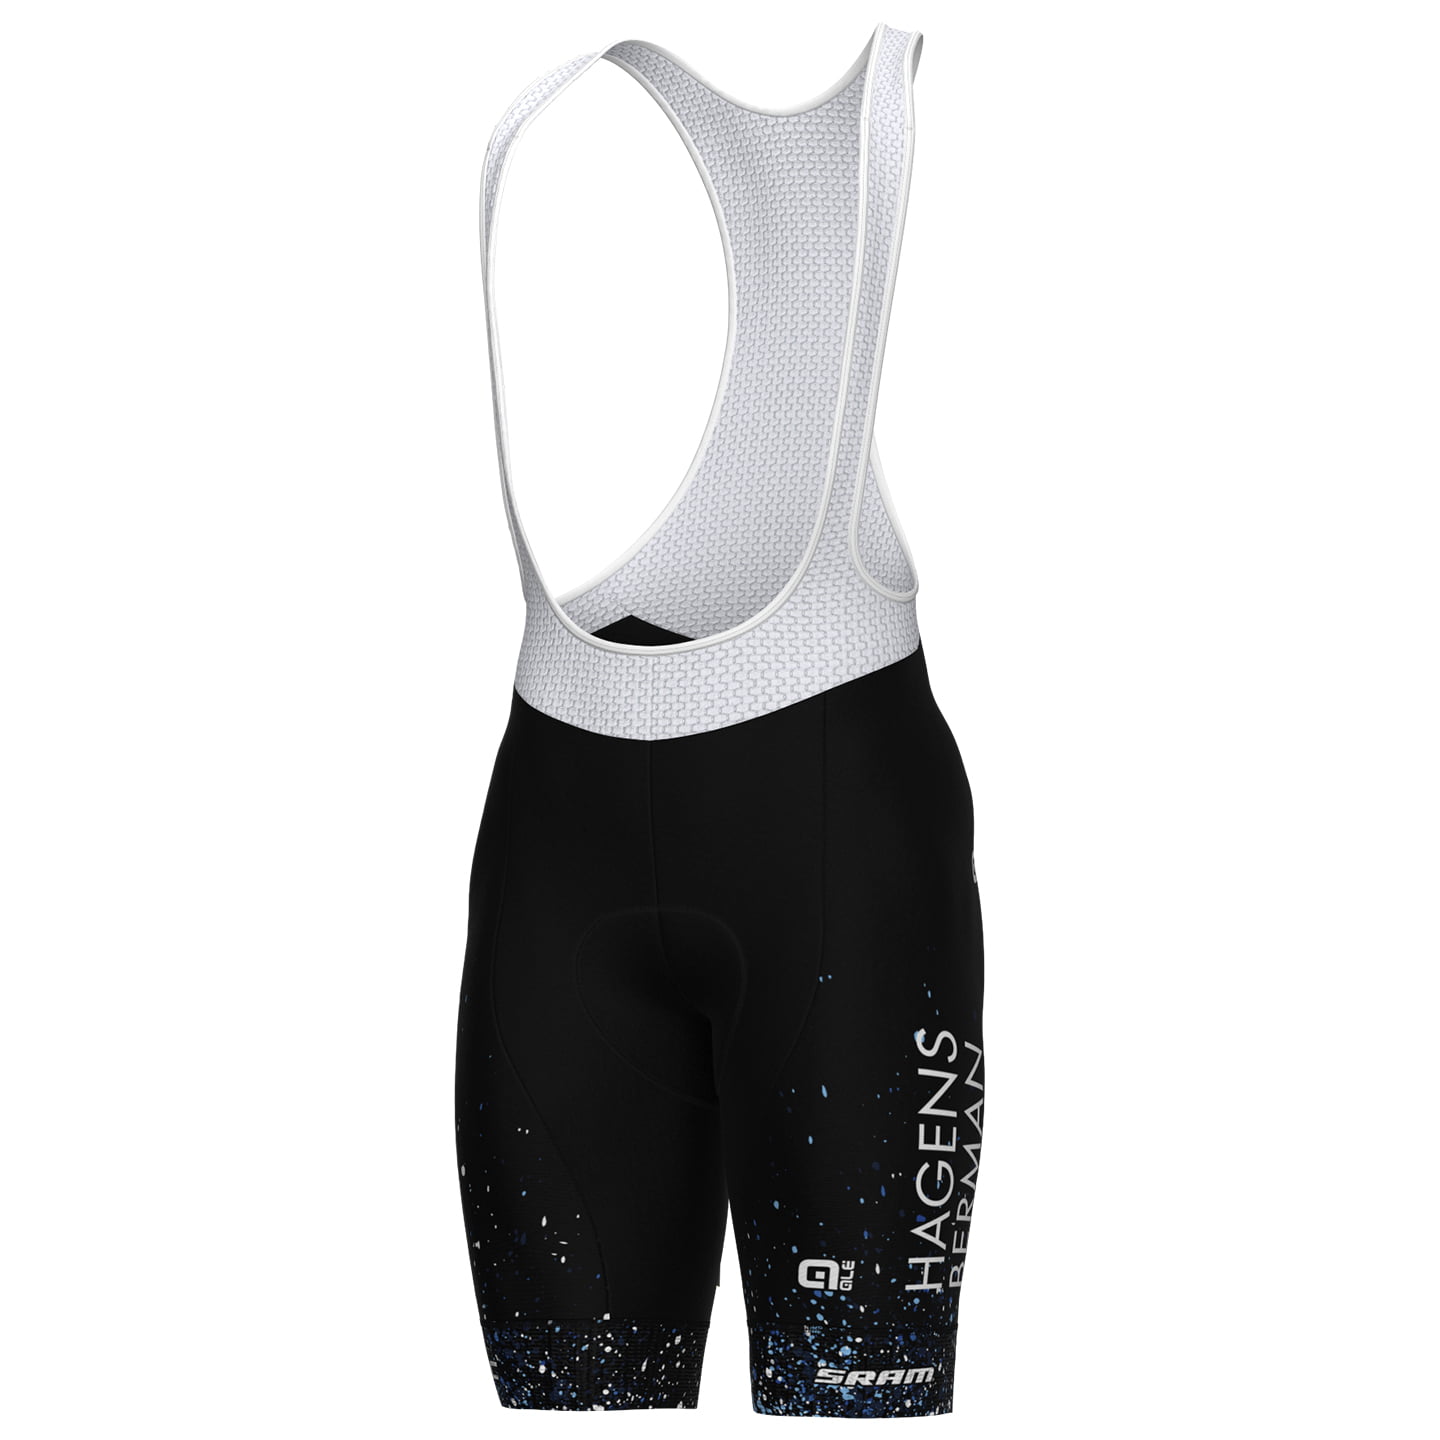 HAGENS BERMAN AXEON 2023 Bib Shorts, for men, size 3XL, Cycling bibs, Bike gear